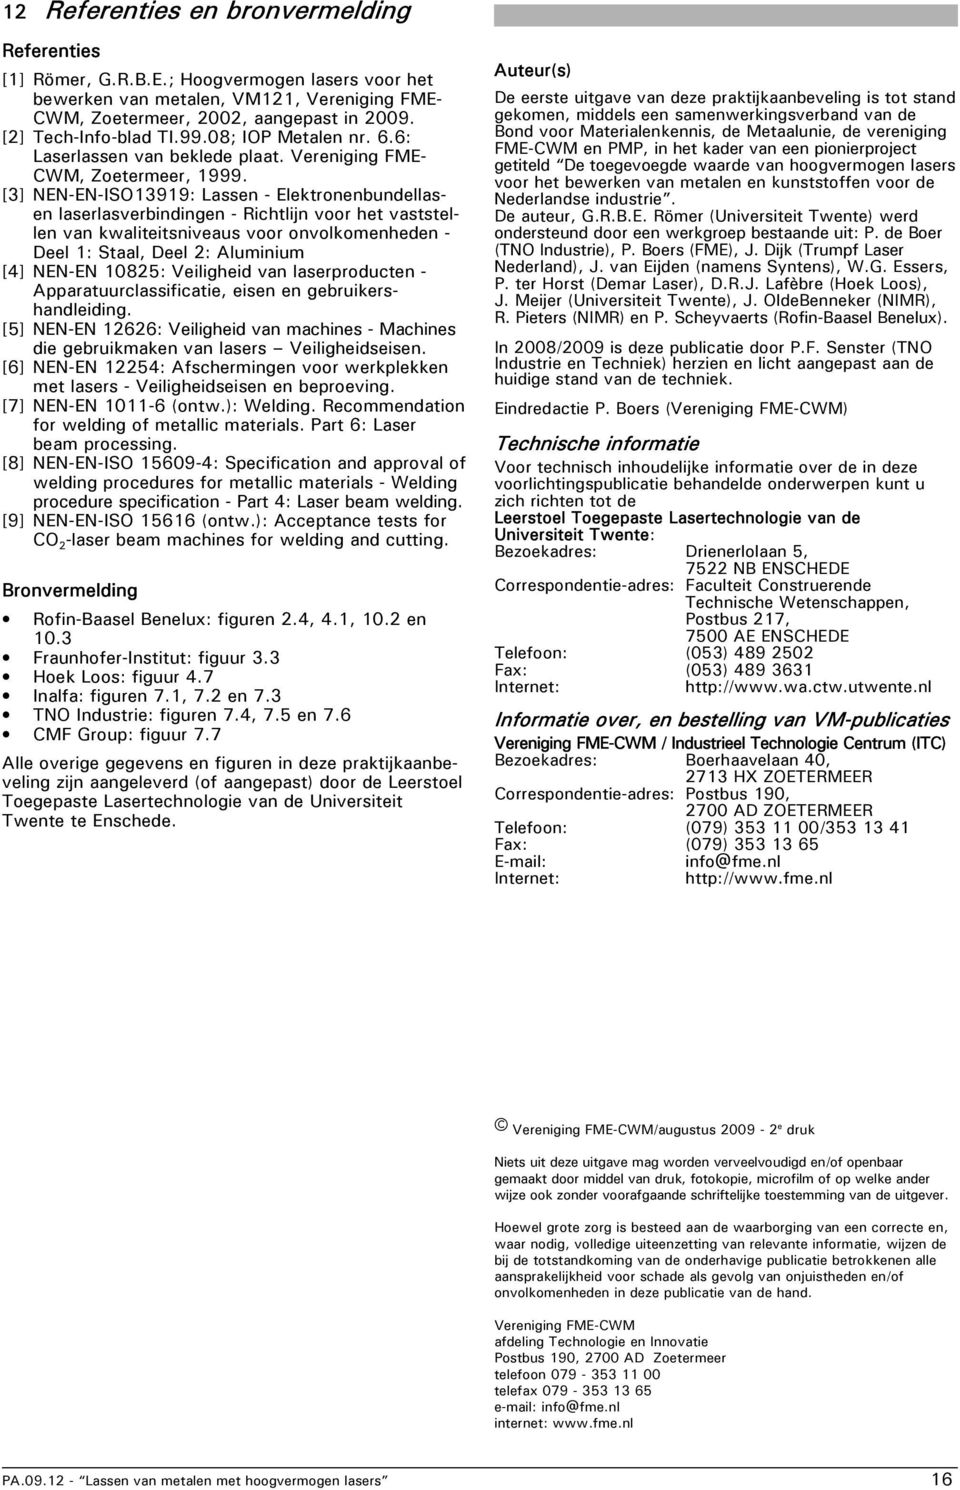 [3] NEN-EN-ISO13919: Lassen - Elektronenbundellasen laserlasverbindingen - Richtlijn voor het vaststellen van kwaliteitsniveaus voor onvolkomenheden - Deel 1: Staal, Deel 2: Aluminium [4] NEN-EN